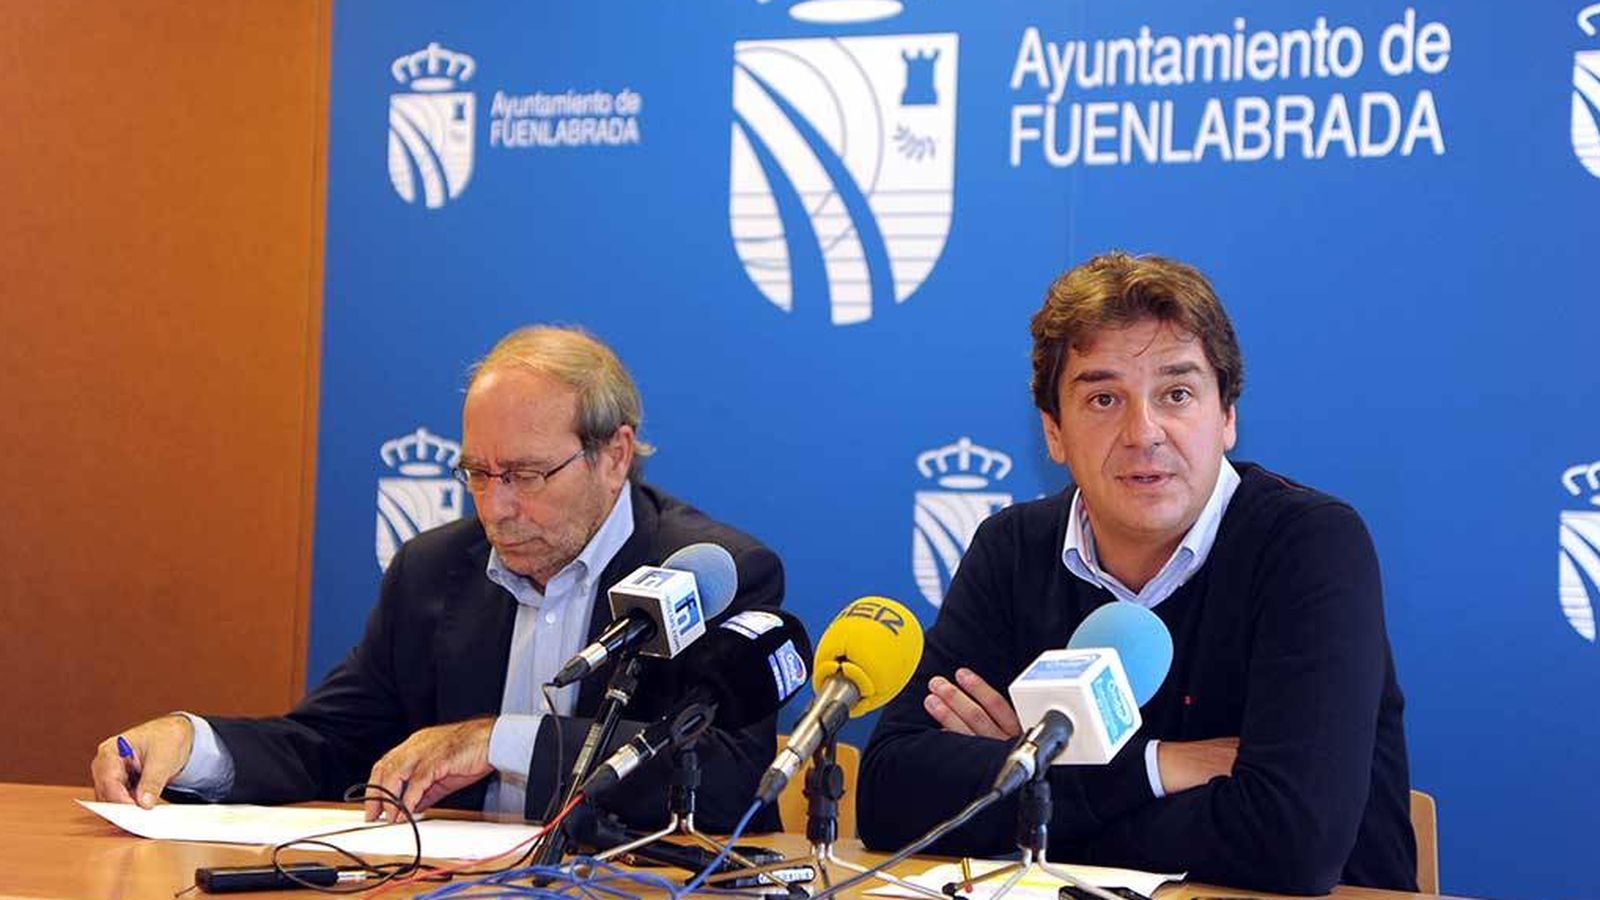 Foto: Javier Ayala (a la derecha), actual alcalde de Fuenlabrada, y su predecesor en el cargo, Manuel Robles.